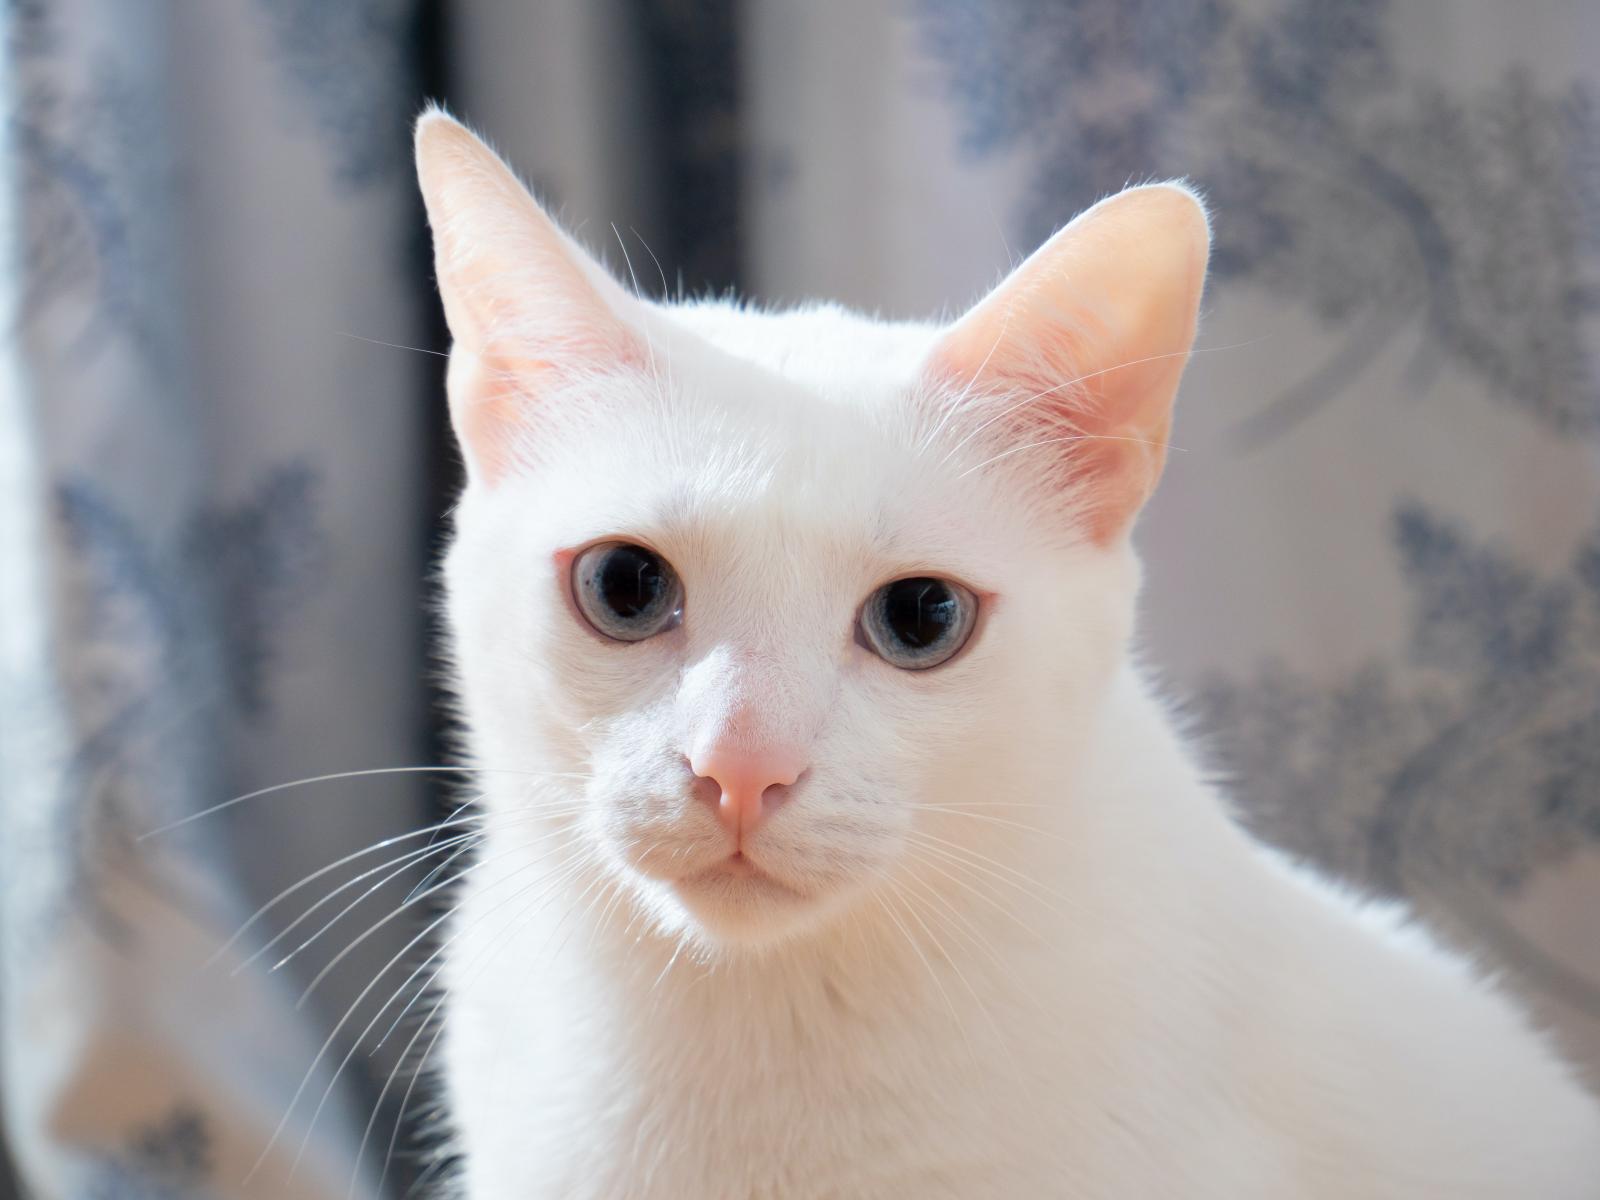 Nằm mơ thấy mèo trắng có ý nghĩa gì? Đánh con gì khi mơ thấy mèo trắng?